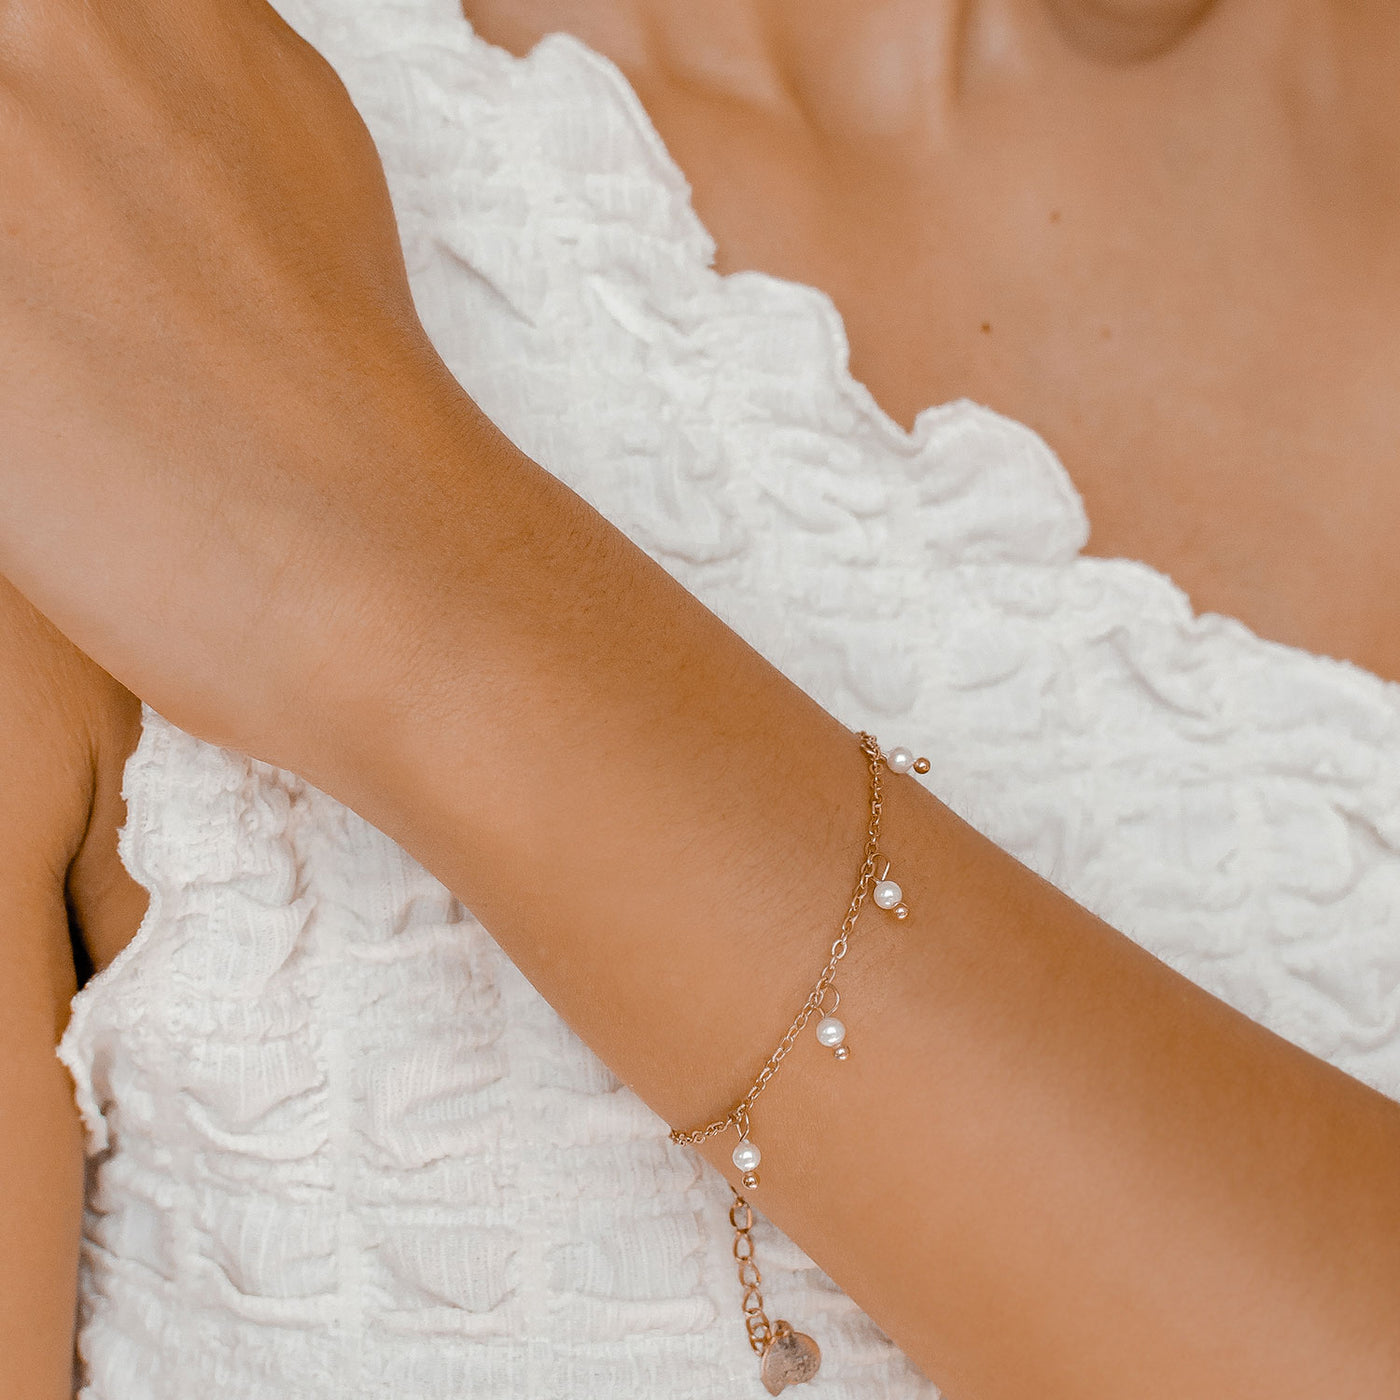 Rosegold Armband mit Perlen Cinque